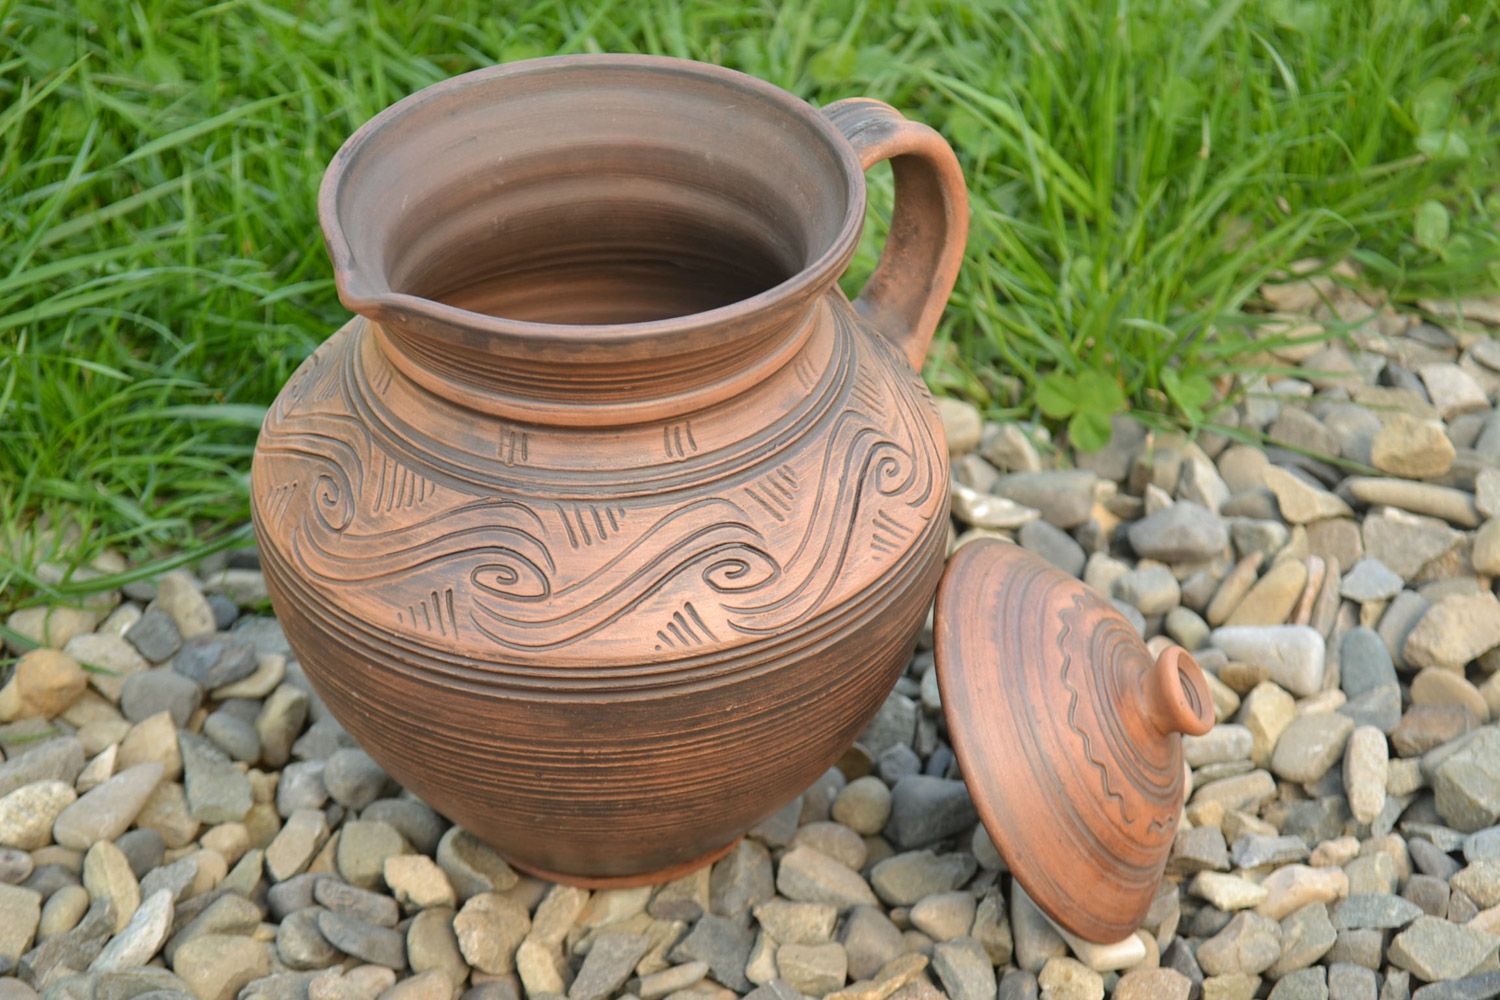 Handmade Keramik Krug aus Ton mit Muster in Braun schön ethnisch 2 Liter foto 1